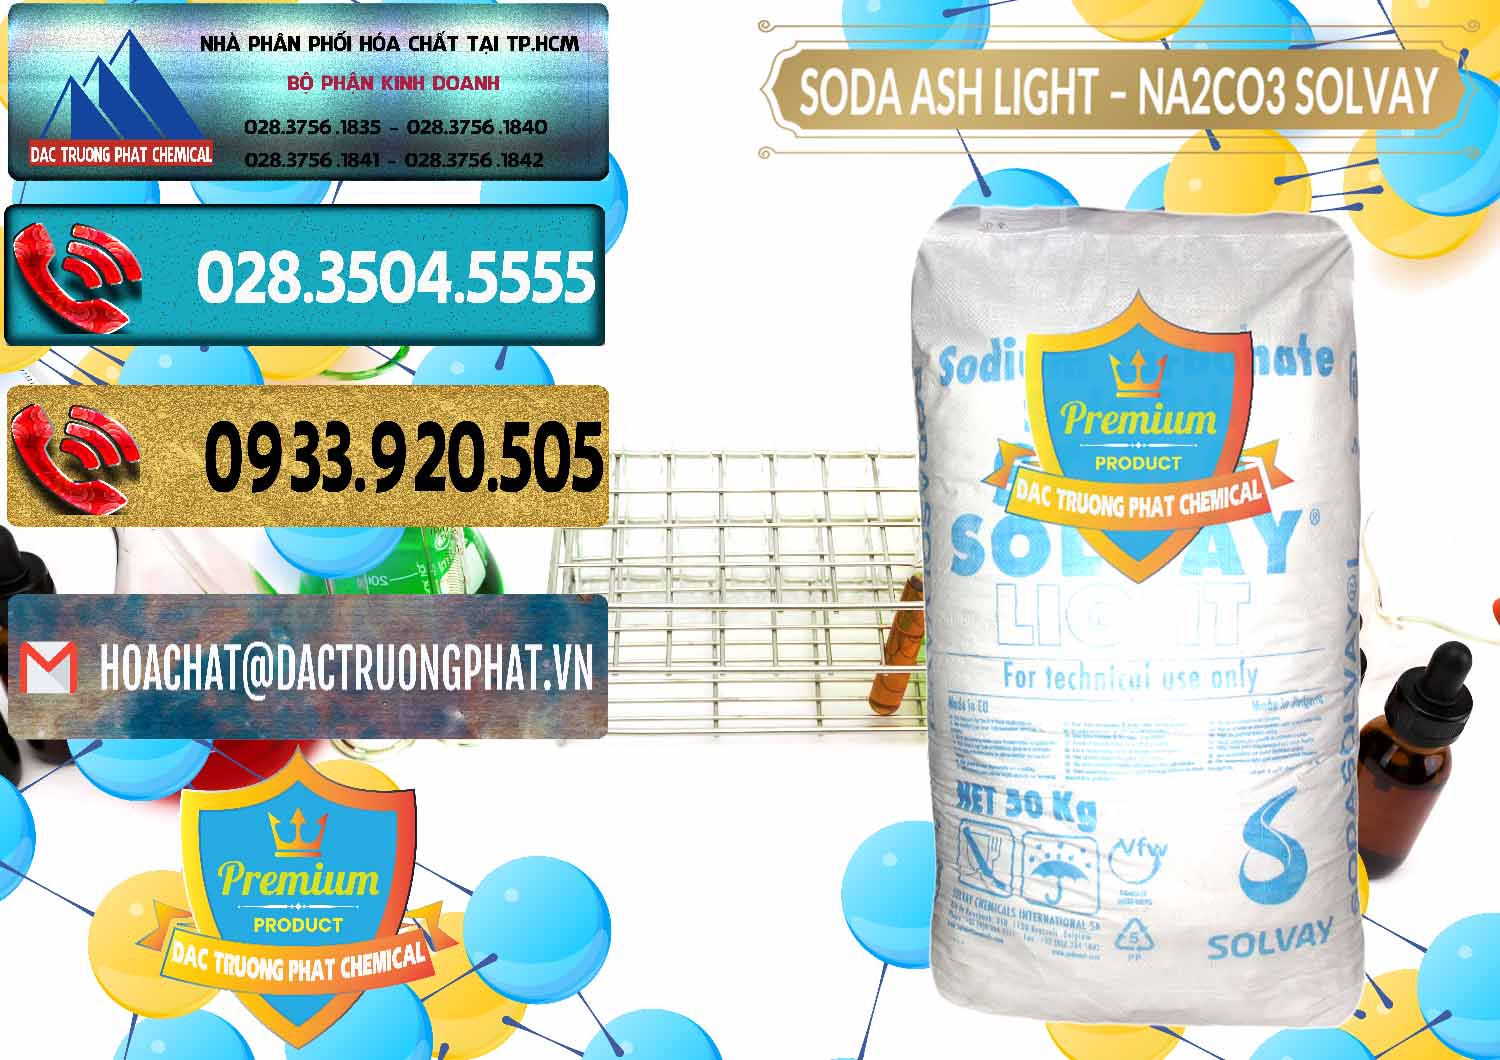 Đơn vị bán & cung cấp Soda Ash Light - NA2CO3 Solvay Bulgaria - 0126 - Cung ứng và phân phối hóa chất tại TP.HCM - hoachatdetnhuom.com